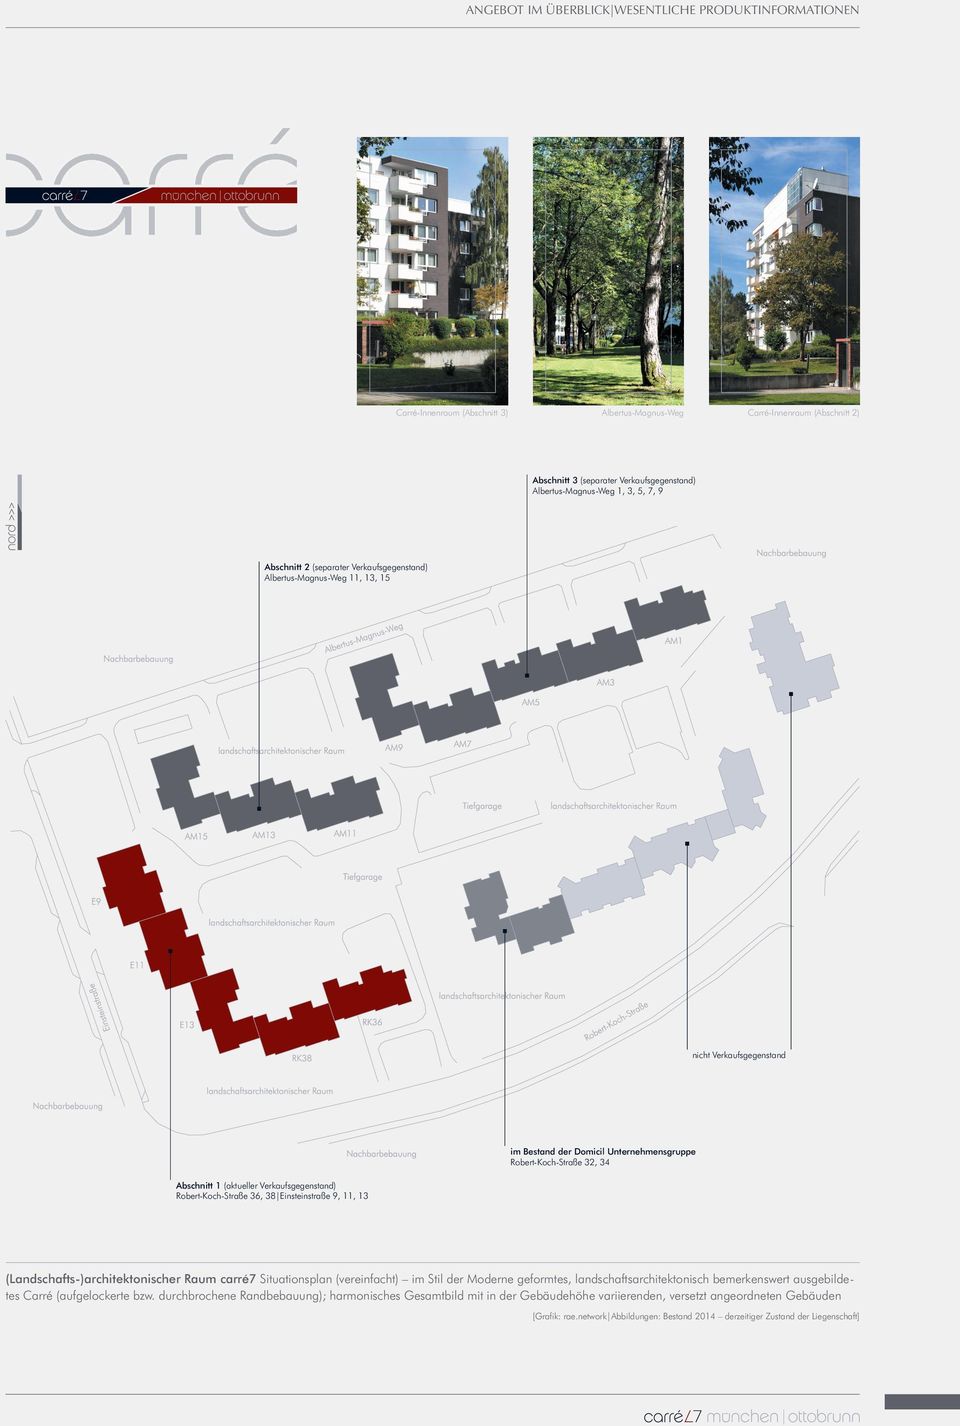 (aktueller Verkaufsgegenstand) Robert-Koch-Straße 36, 38 Einsteinstraße 9, 11, 13 (Landschafts-)architektonischer Raum carré7 Situationsplan (vereinfacht) im Stil der Moderne geformtes,